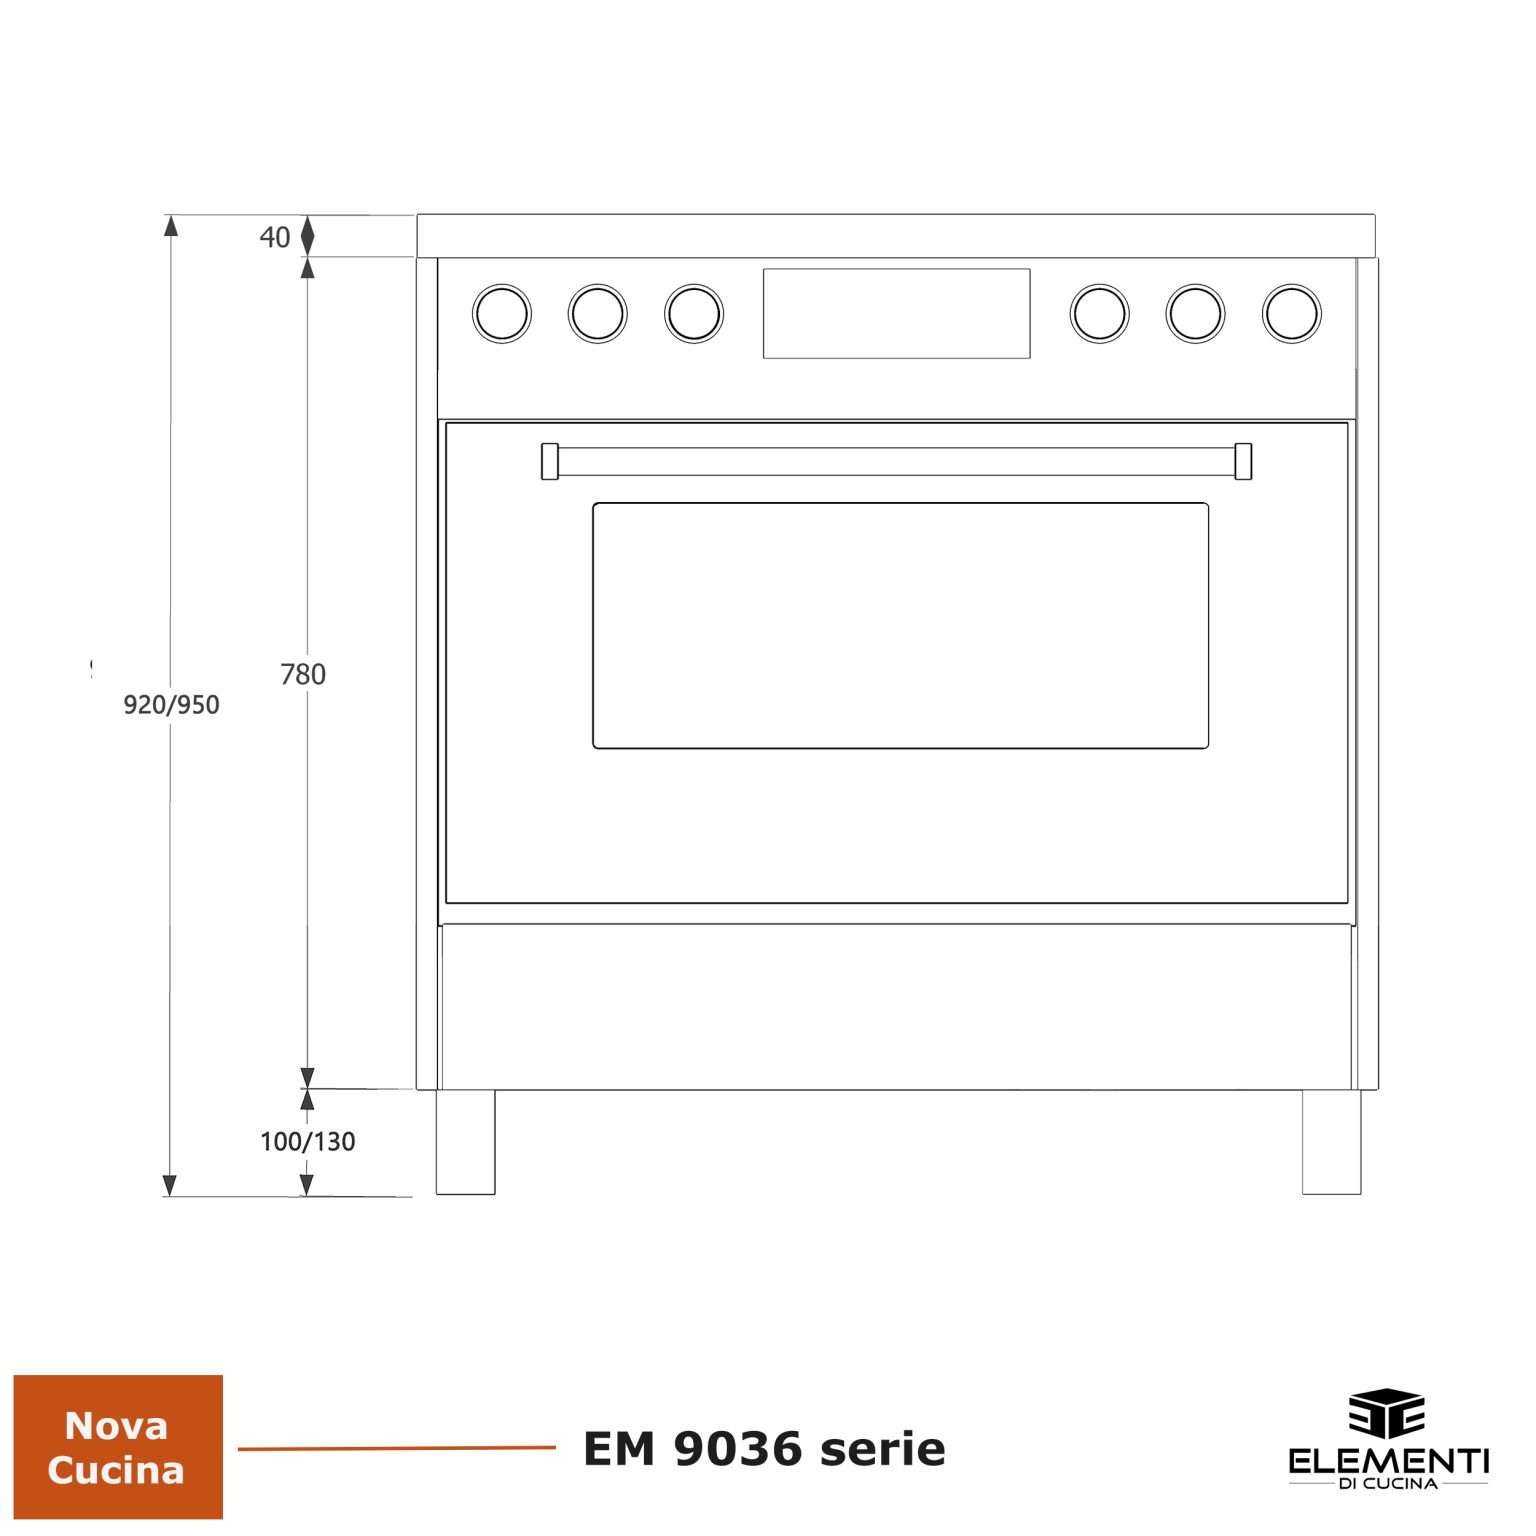 Maattekening ELEMENTI DI CUCINA fornuis inductie EM9036-WT-IX-S